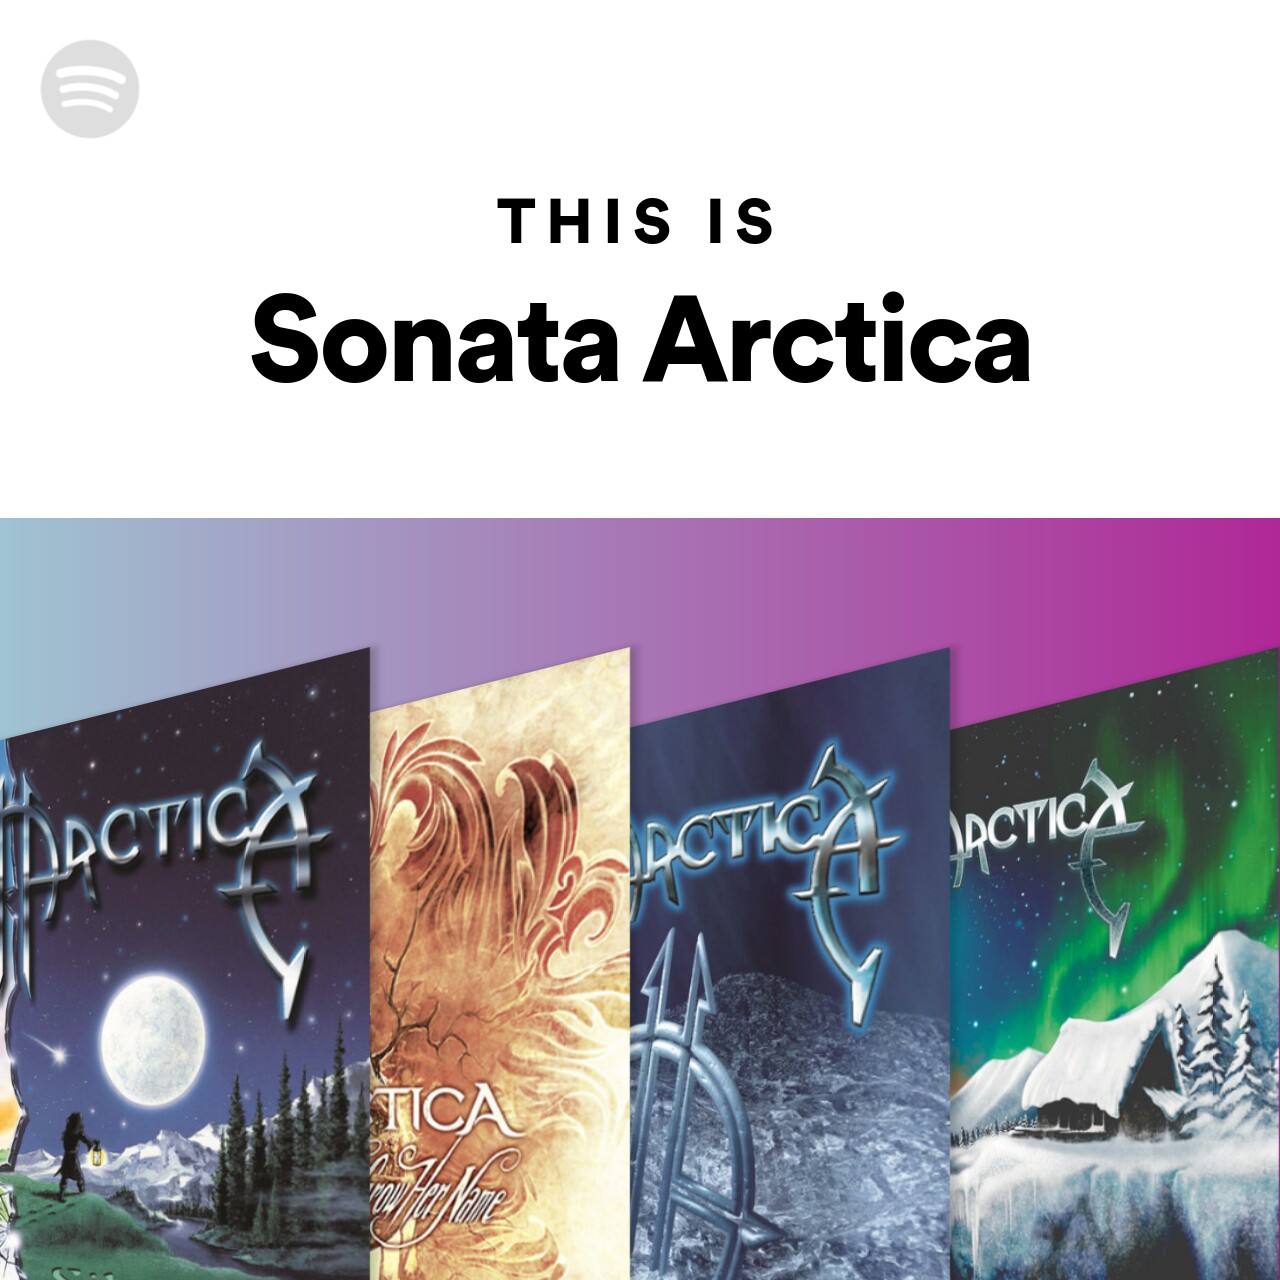 This Is Sonata Arcticaのサムネイル